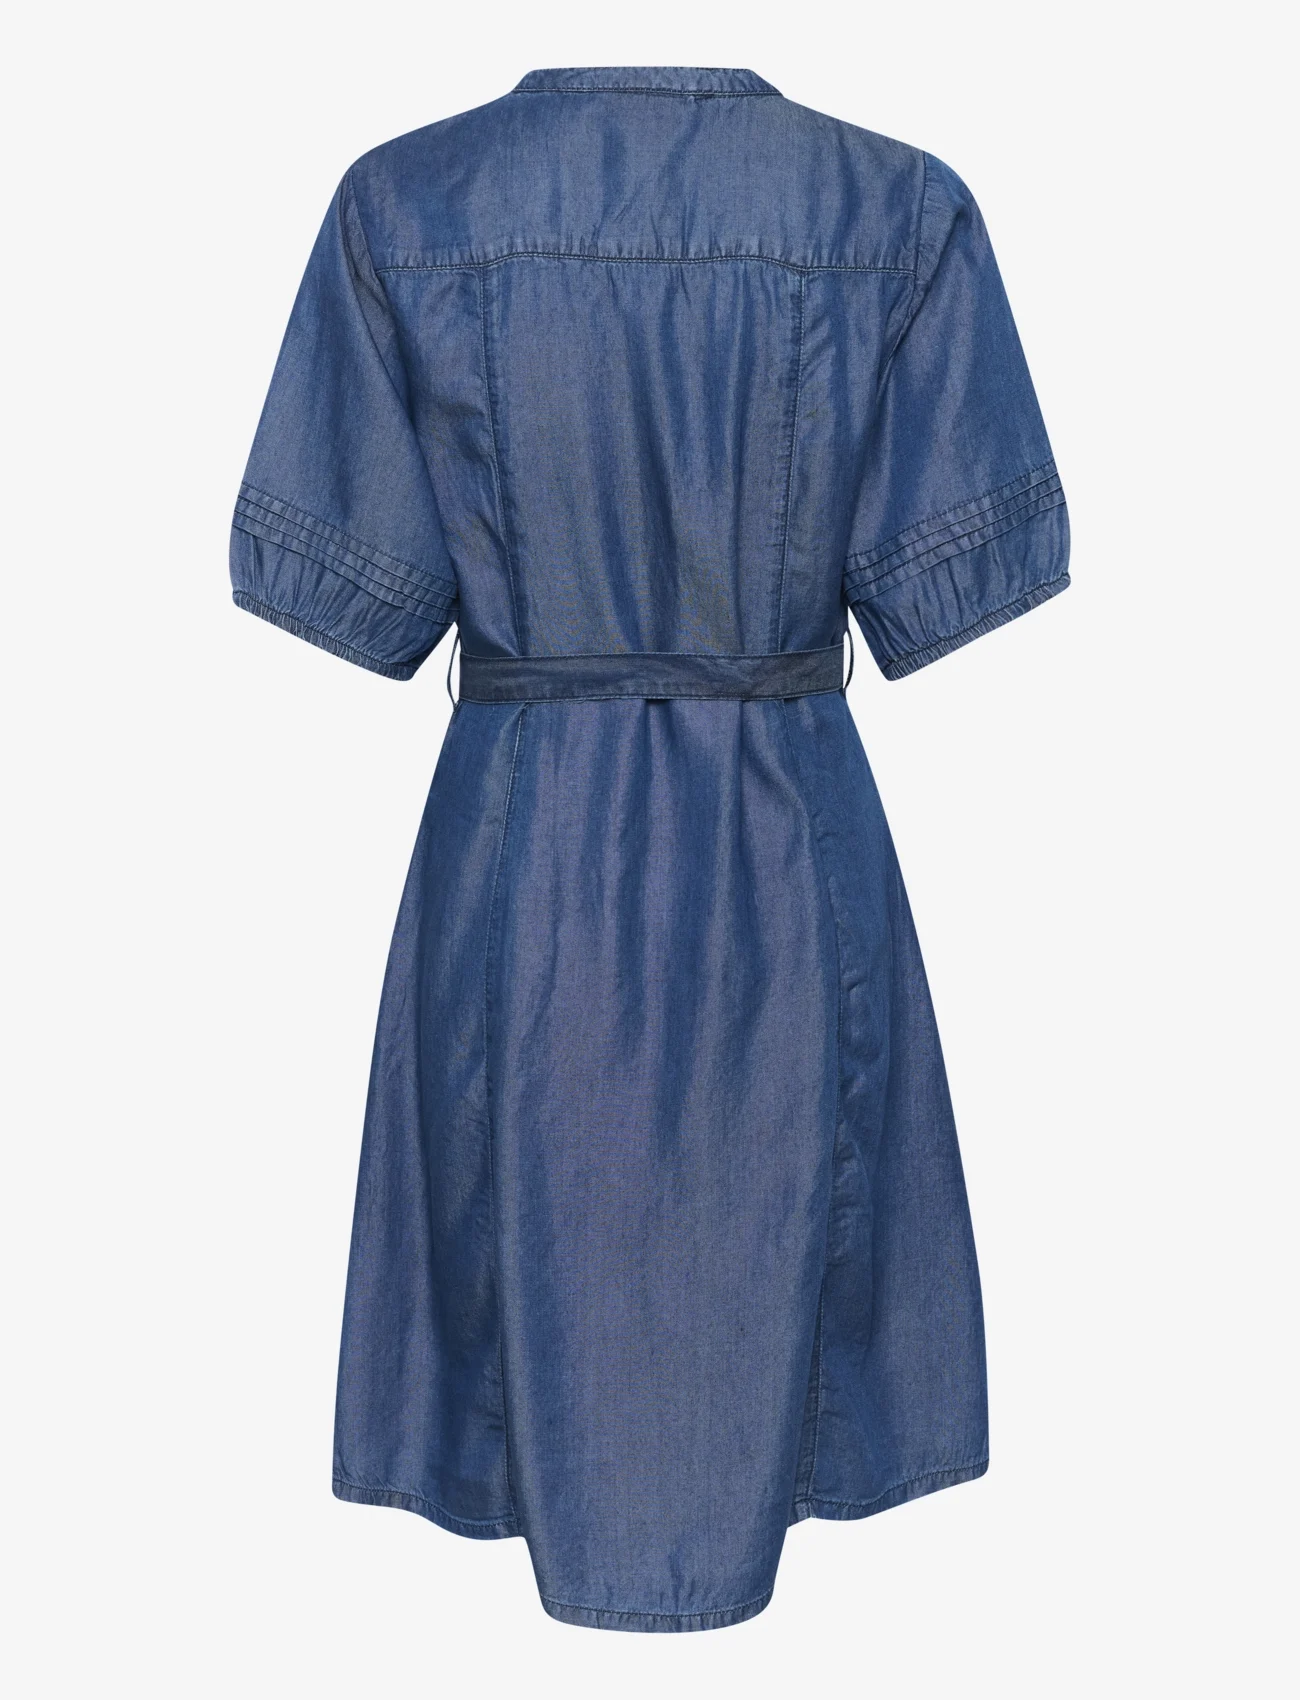 Cream - CRMolly Dress - Zally Fit - särkkleidid - light blue denim - 1